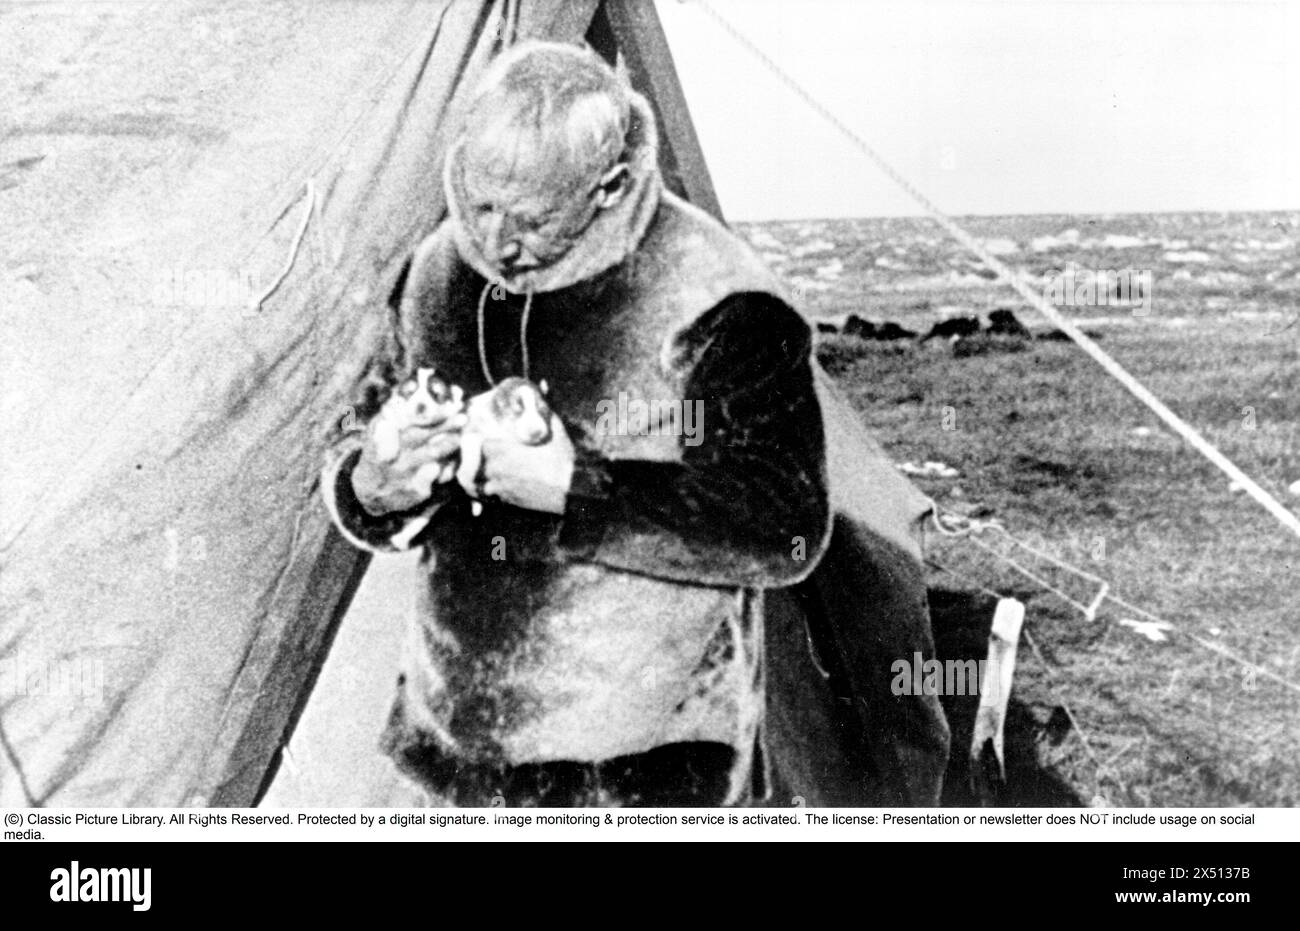 Roald Amundsen. Norwegischer Polarforscher. 1872-1928. 1925 unternahm er einen erfolglosen Versuch, den Nordpol mit dem Flugzeug zu erreichen. Im Bild: Roald Amundsen Stockfoto